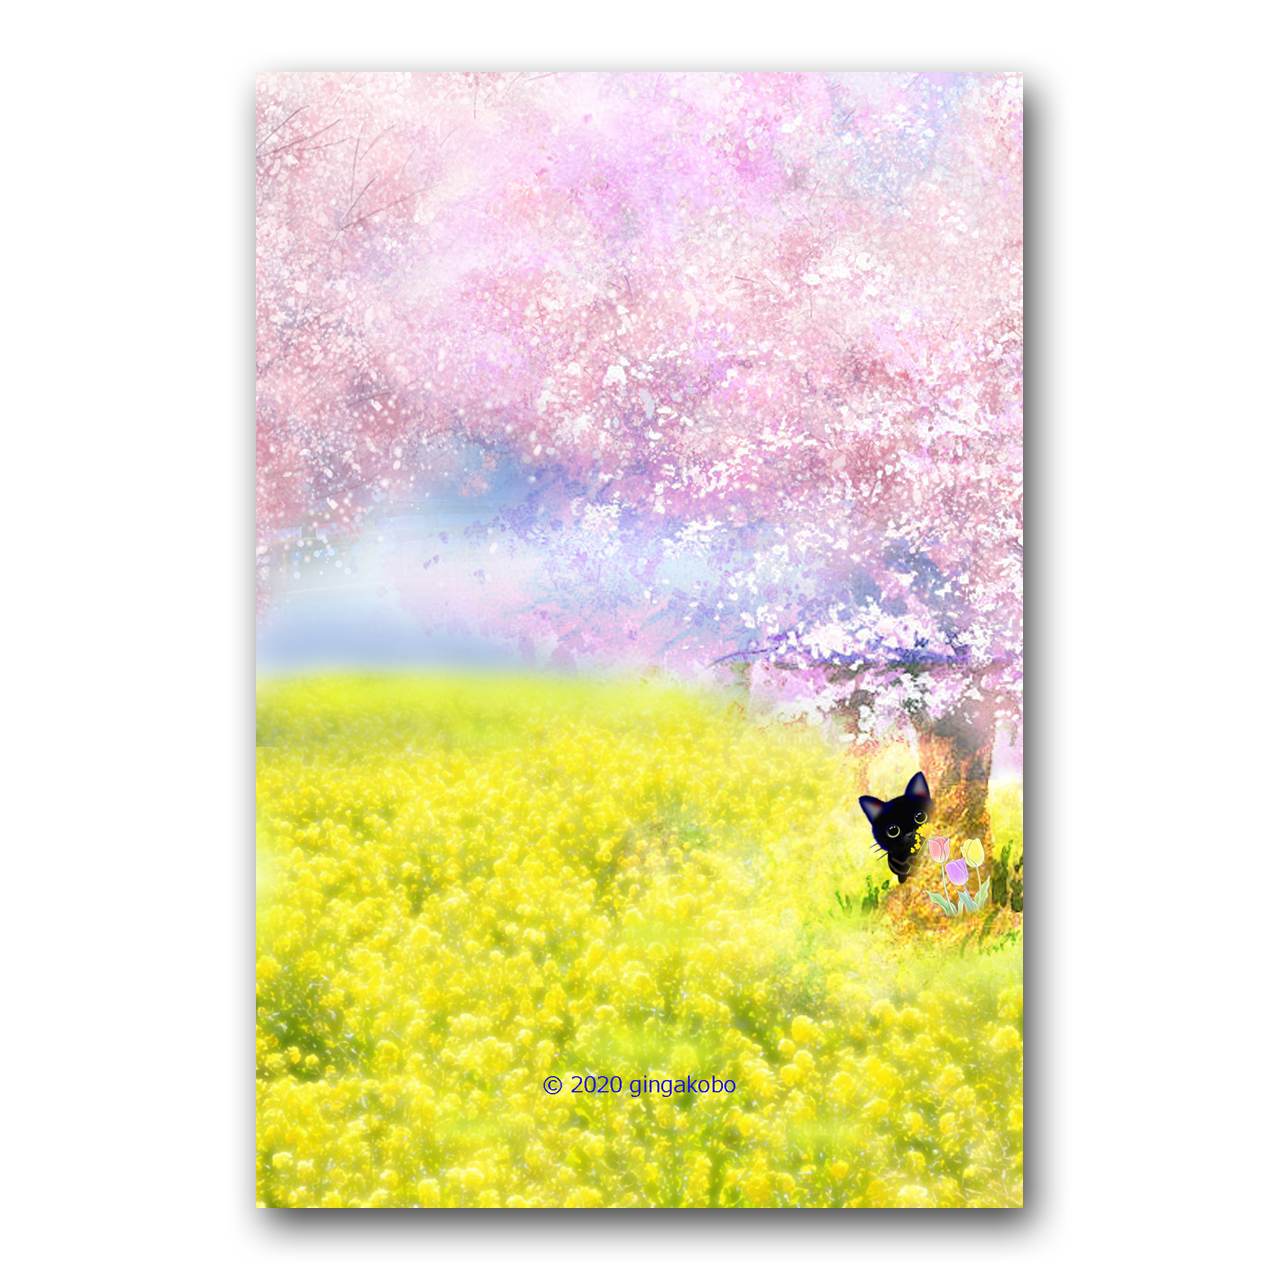 桜と菜の花とニャン ほっこり癒しのイラストポストカード2枚組 No 999 Iichi ハンドメイド クラフト作品 手仕事品の通販